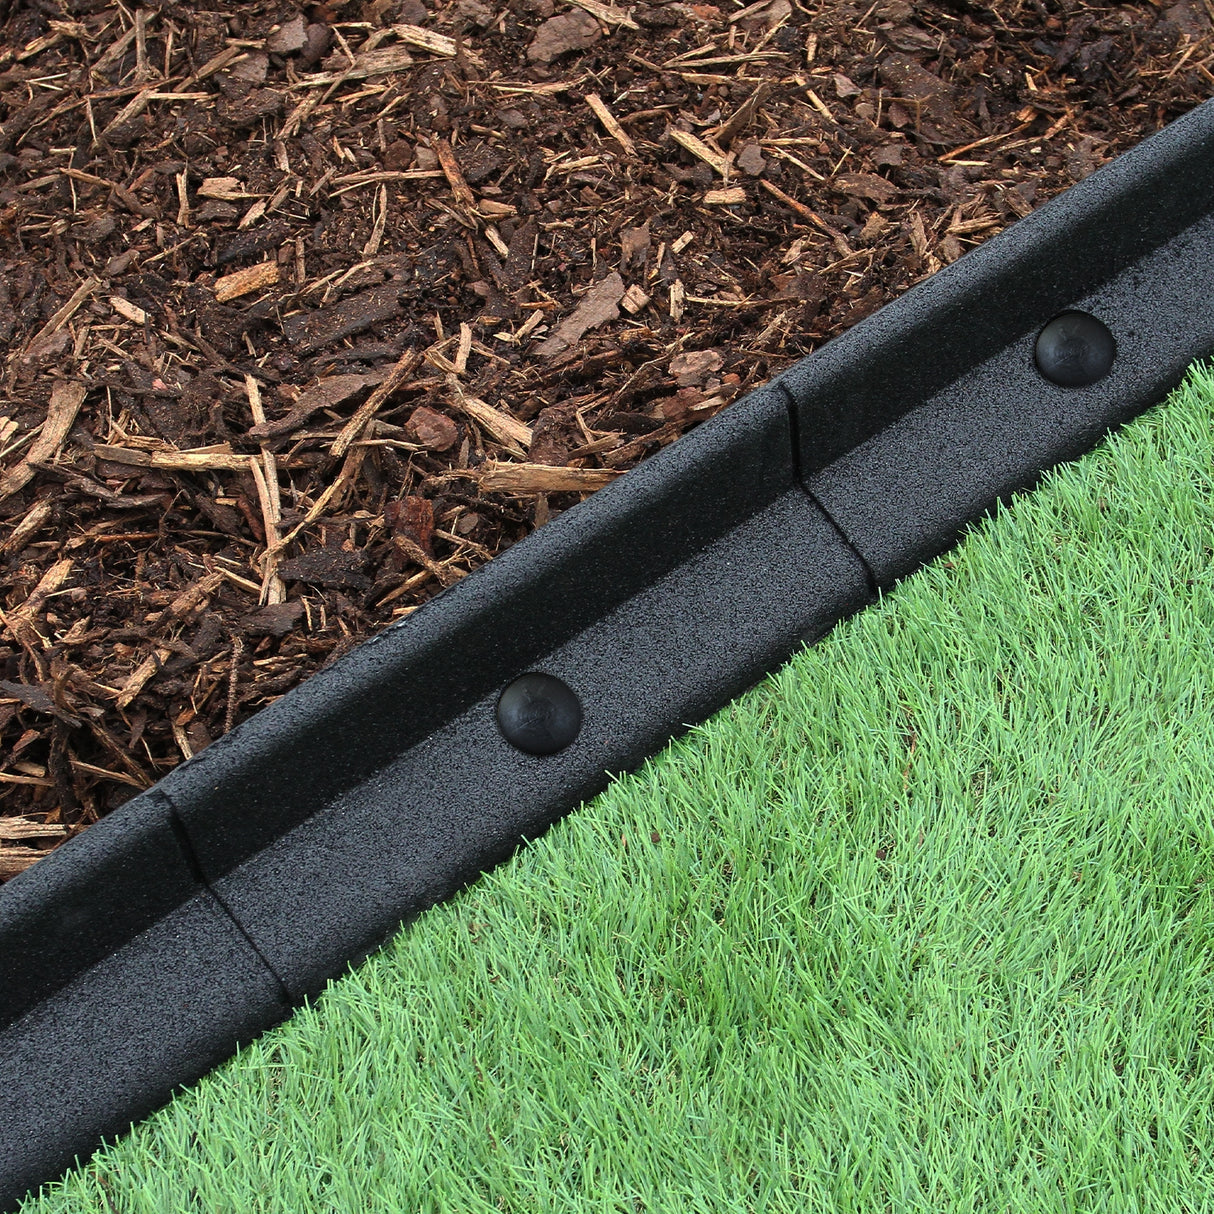 Flexible Lawn Edging Black 1.2m x 20